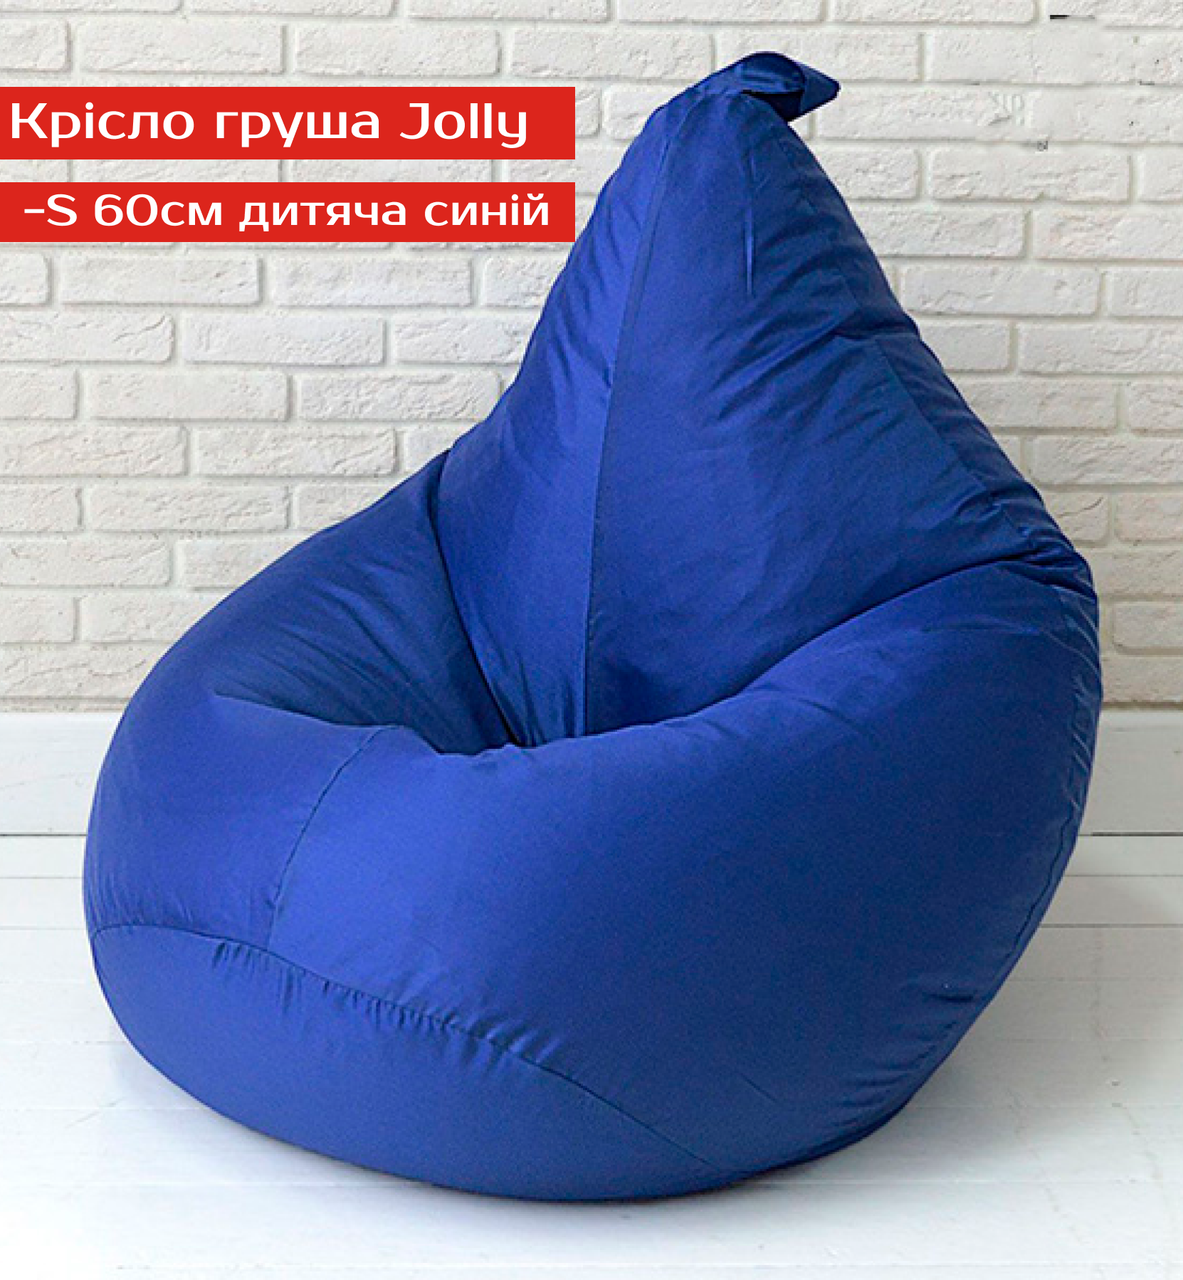 Крісло груша Jolly-S 60см дитяча синій, фото 1